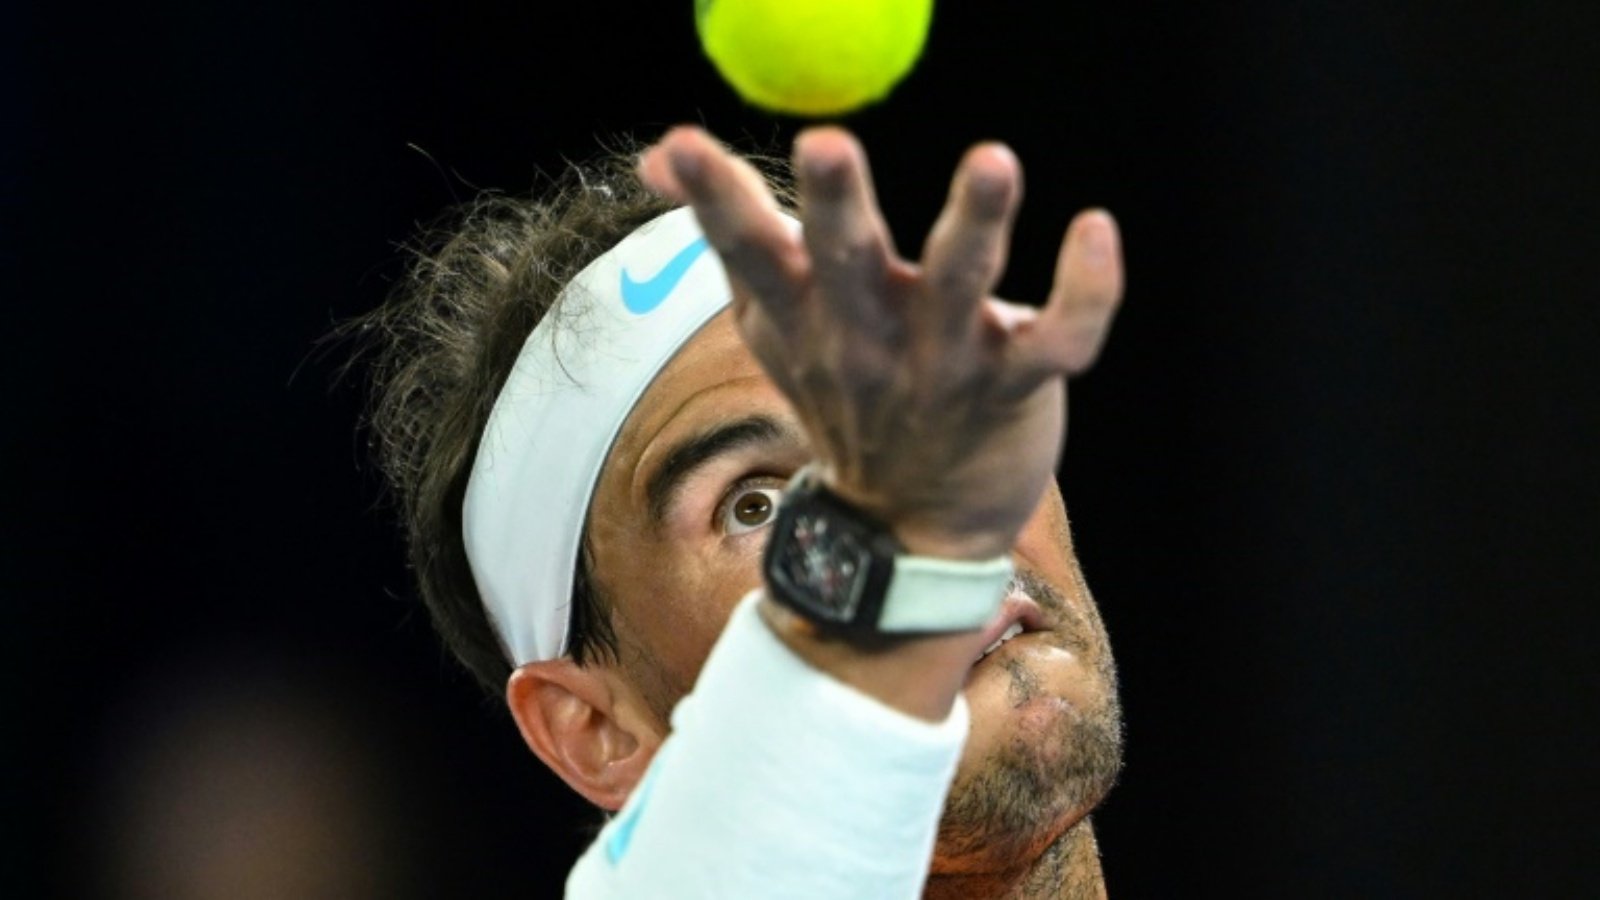 الإسباني رافايل نادال خلال مباراته أمام الأميركي ماكنزي ماكدونالد في اليوم الثالث من بطولة أستراليا المفتوحة لكرة المضرب في ملبورن في 18 يناير 2023